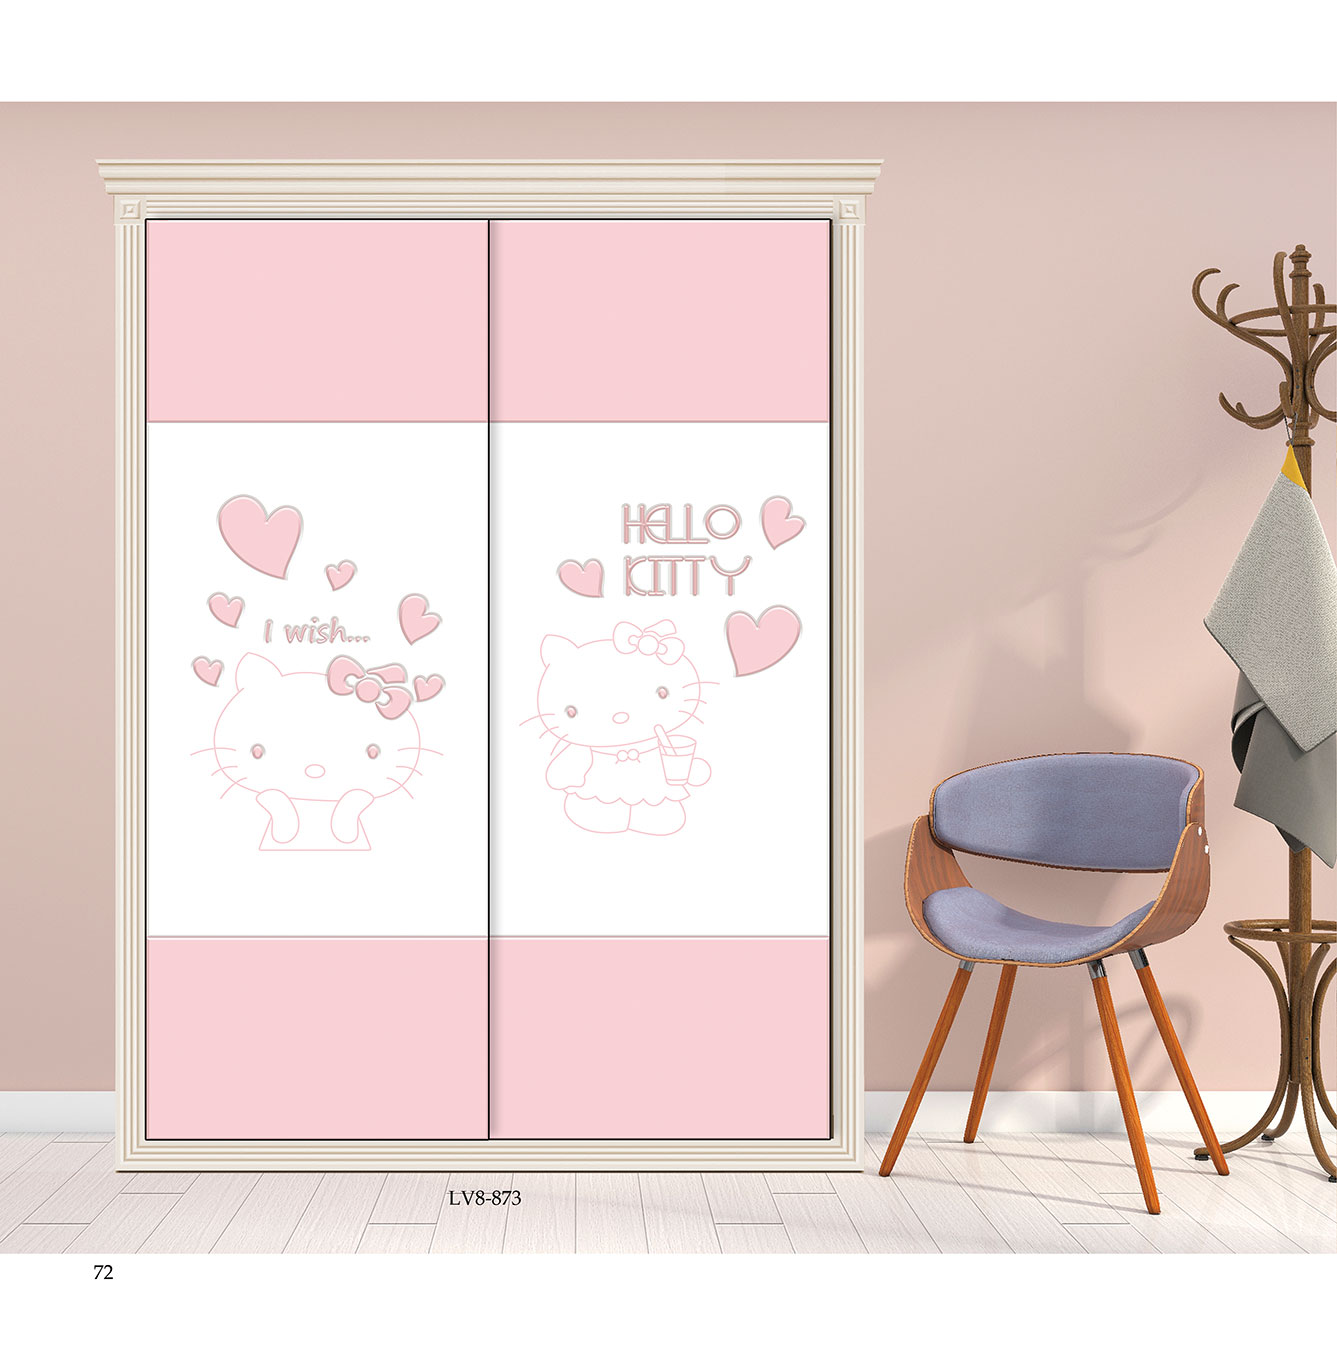  移门图 雕刻路径 橱柜门板  LV8-873 彩雕板,新款,UV打印 Hello Kitty， 猫咪，卡通 爱心， KT猫 ，花 ，星星， 蝴蝶结 粉色